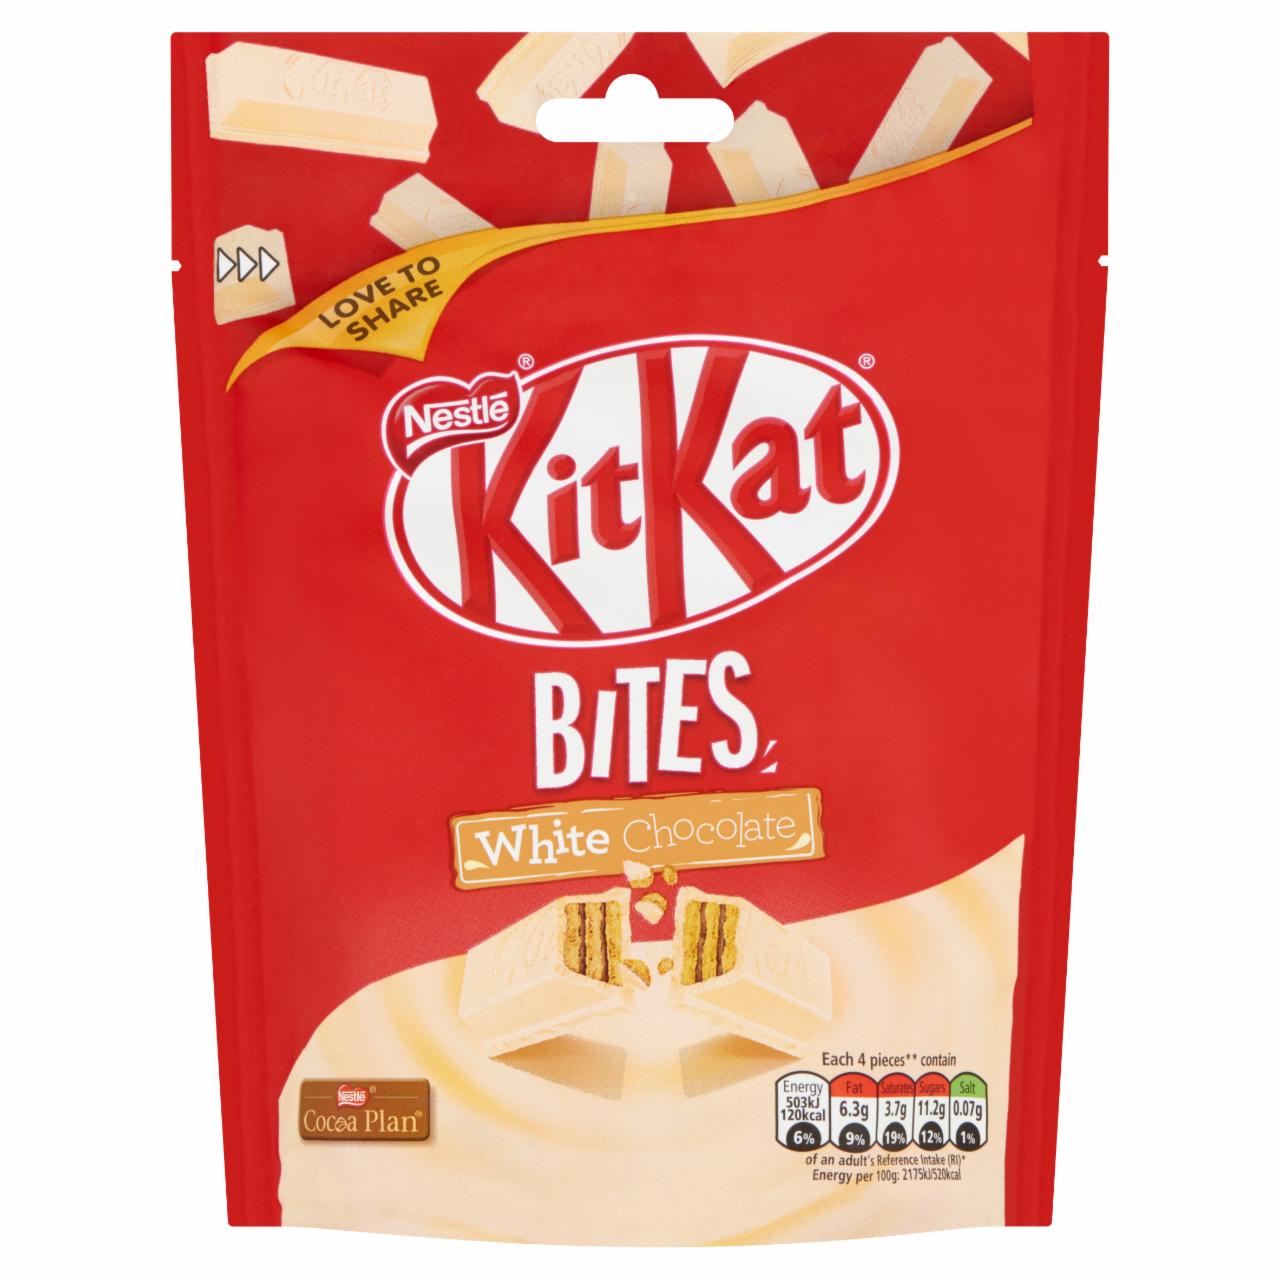 Képek - KitKat ropogós ostya fehér csokoládéban 104 g